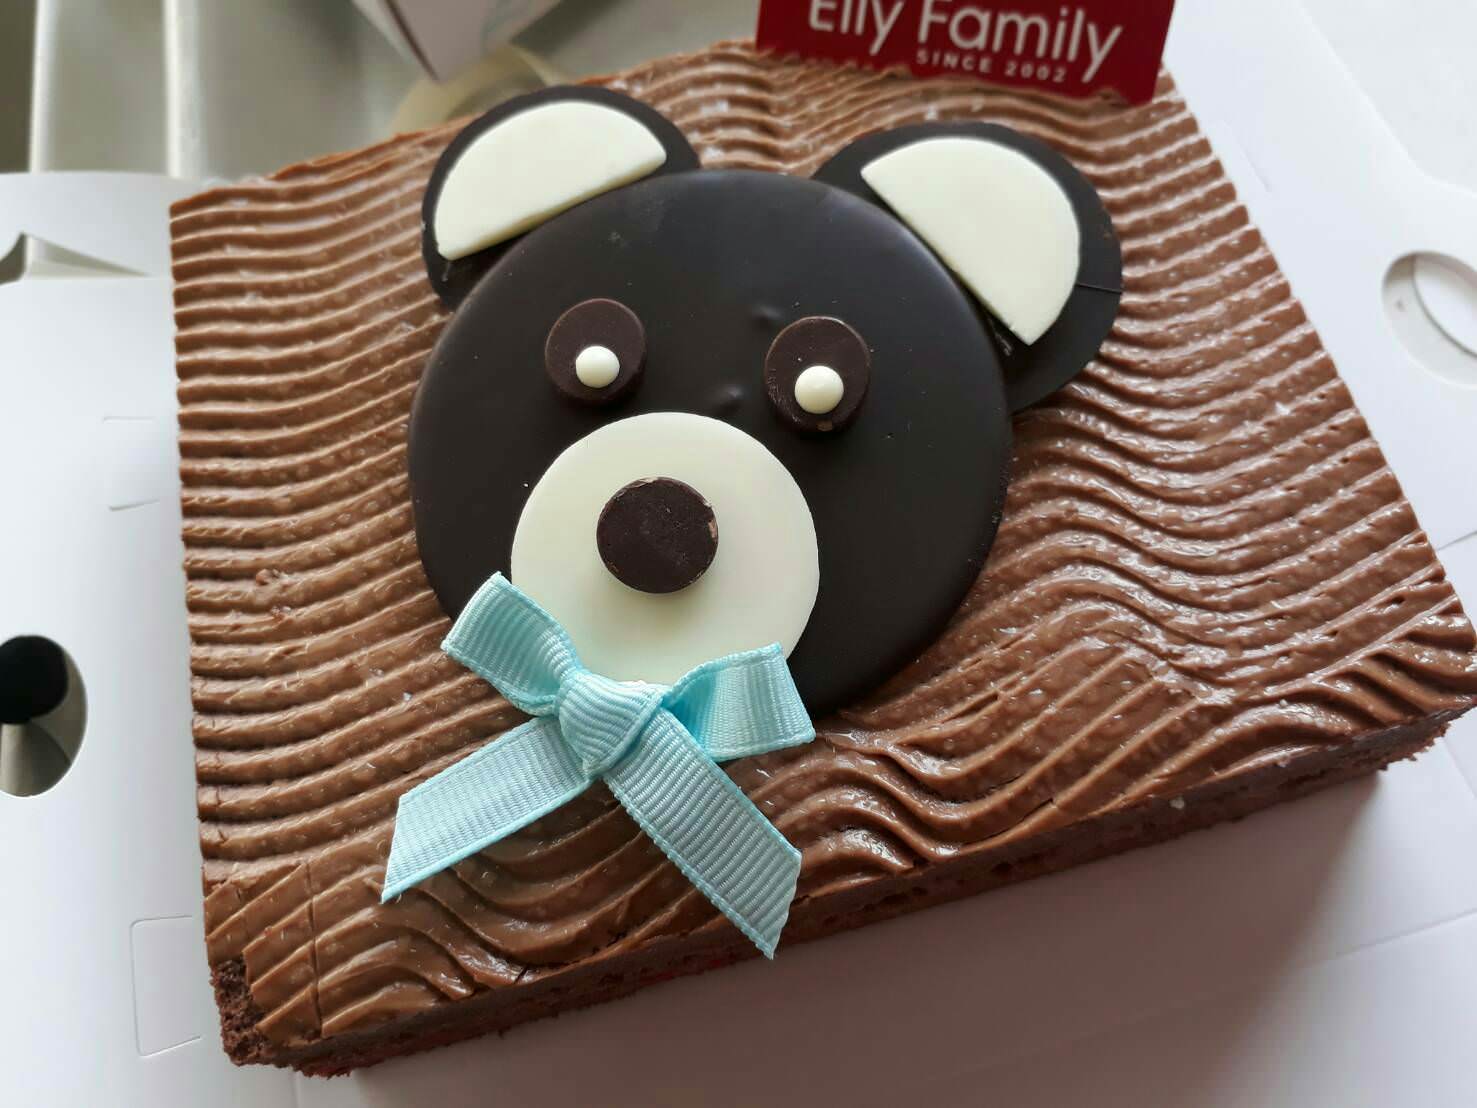 蛋糕禮盒,Elly Family,彌月蛋糕,彌月蛋糕試吃,彌月蛋糕推薦,台北彌月蛋糕,新竹彌月蛋糕,艾立蛋糕,生巧克力蛋糕,腳丫蛋糕,蛋糕捲